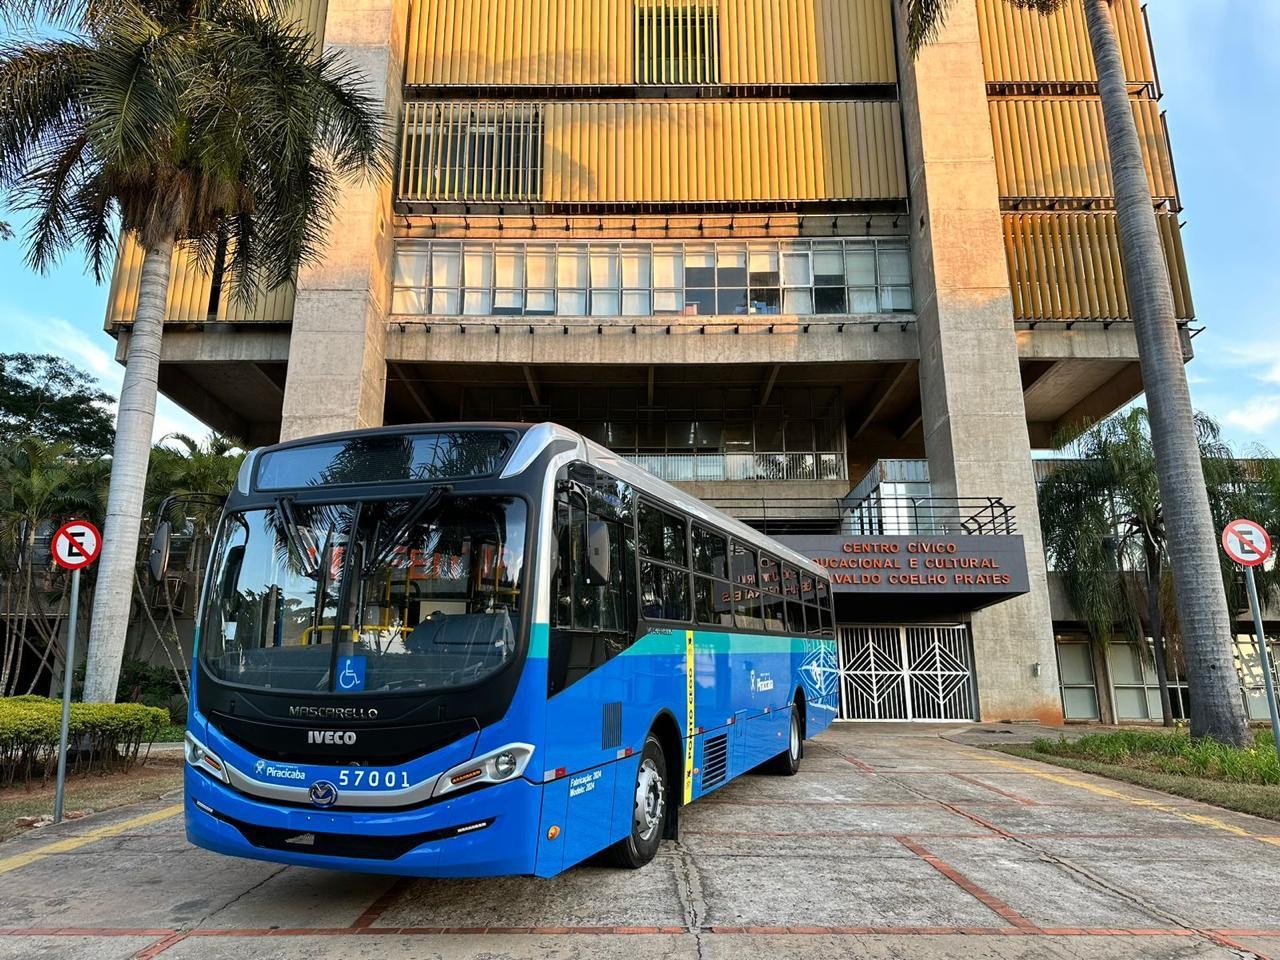 Nova empresa começa a operar a 1ª linha do transporte de Piracicaba em 7 de julho, diz prefeitura